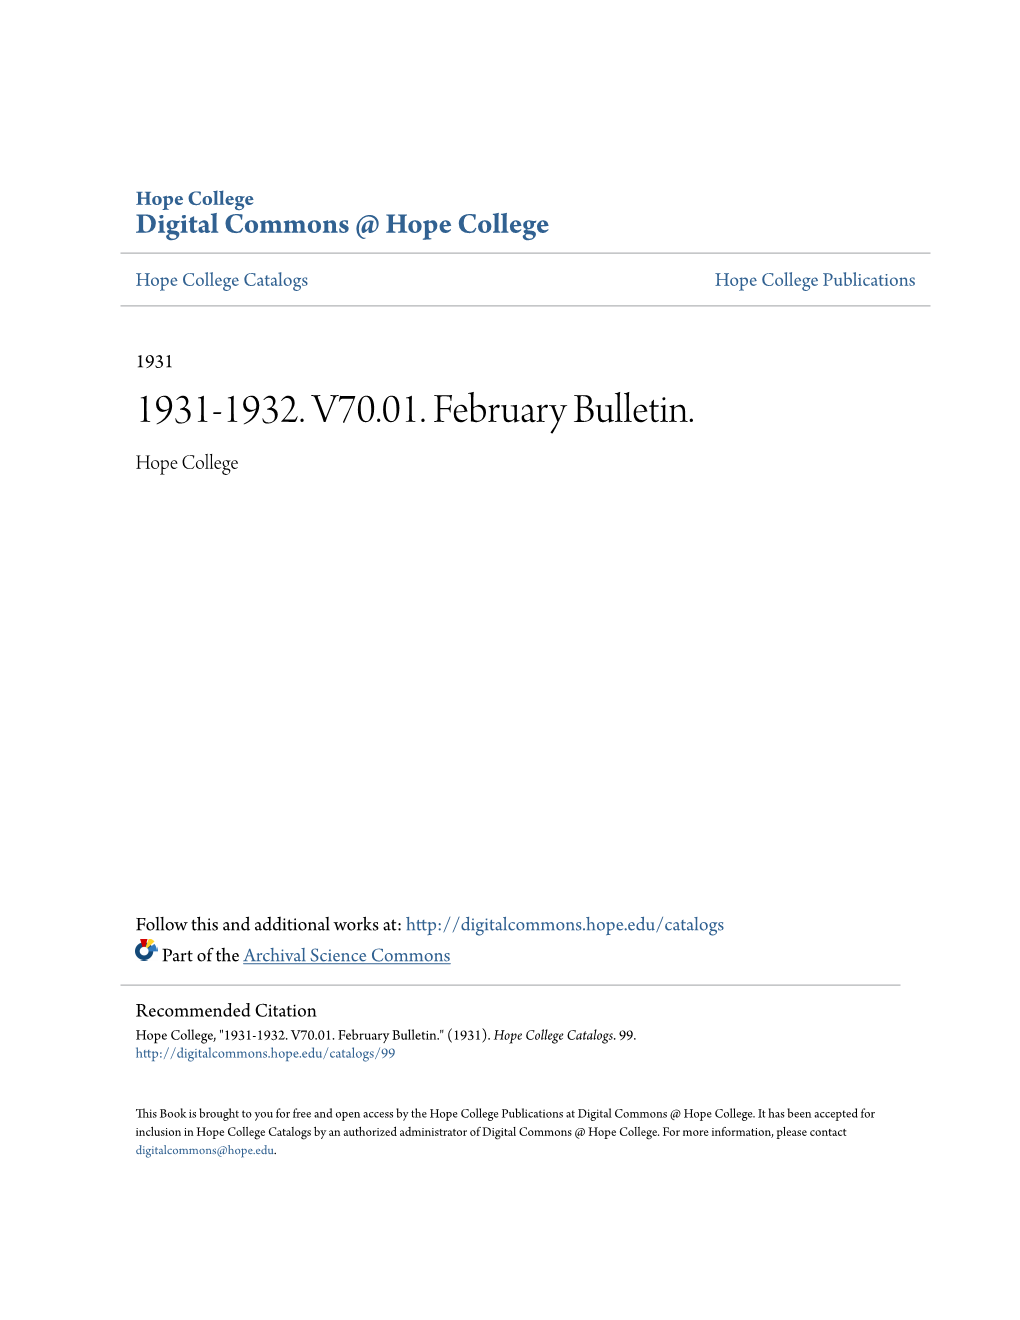 1931-1932. V70.01. February Bulletin. Hope College